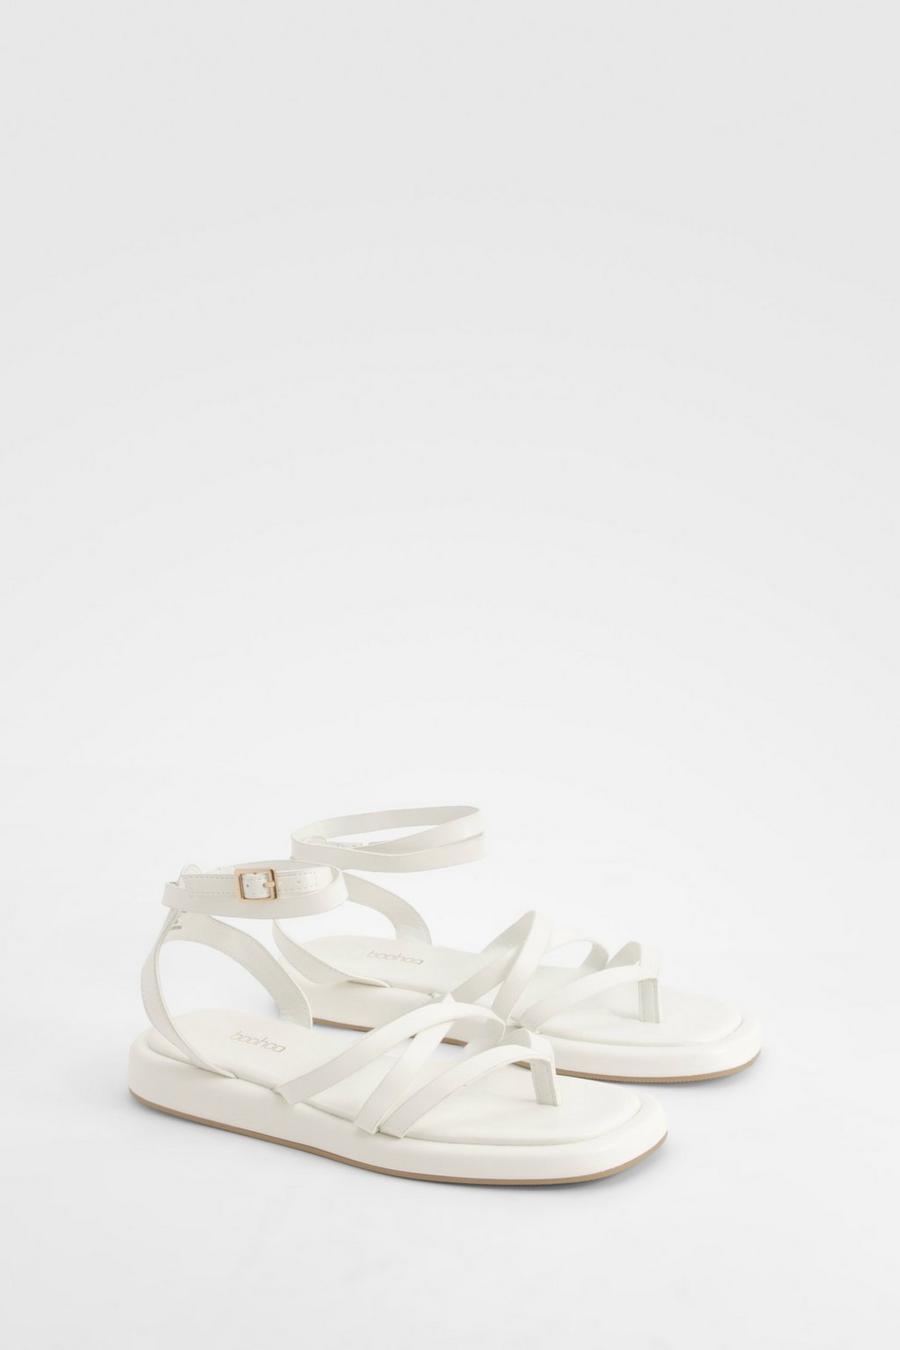 Sandali a calzata ampia con laccetti e suola alta, White